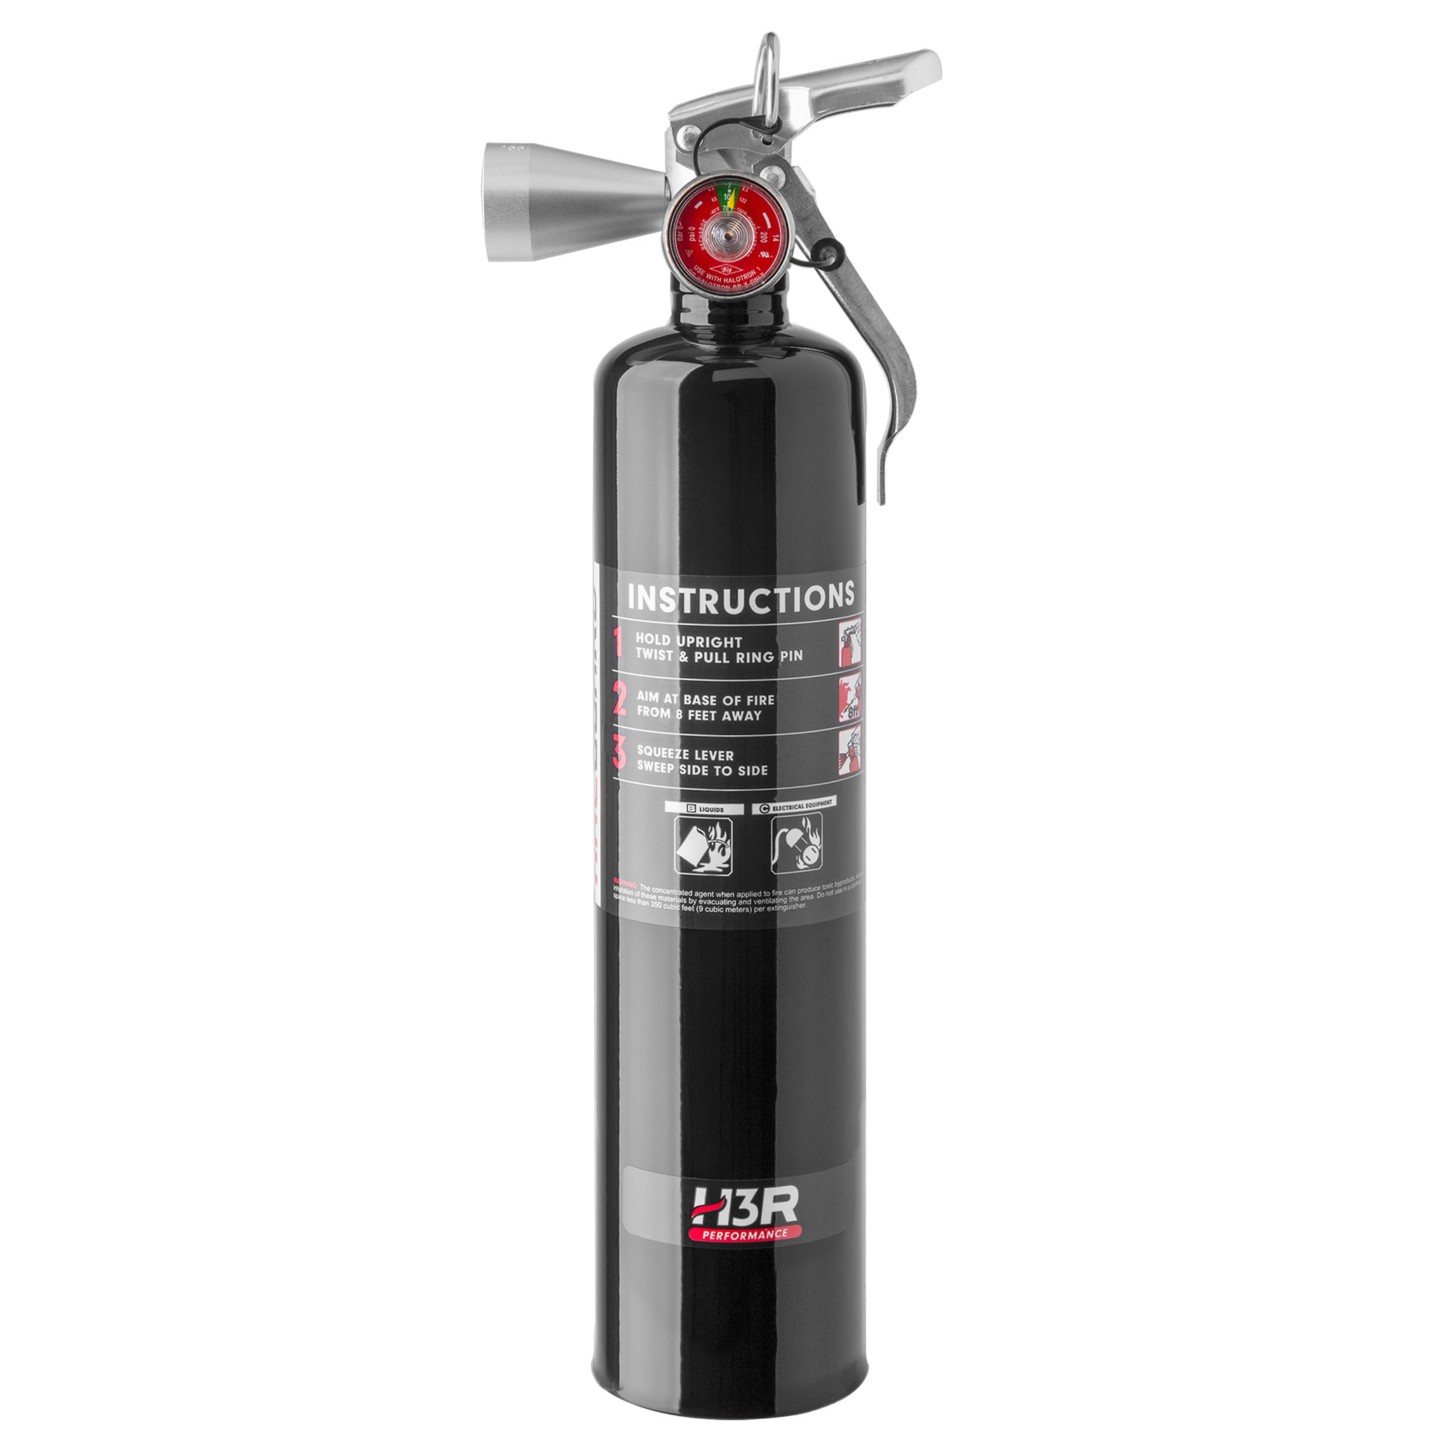 2.5 lb. HalGuard Black Clean Agent Fire Extinguisher